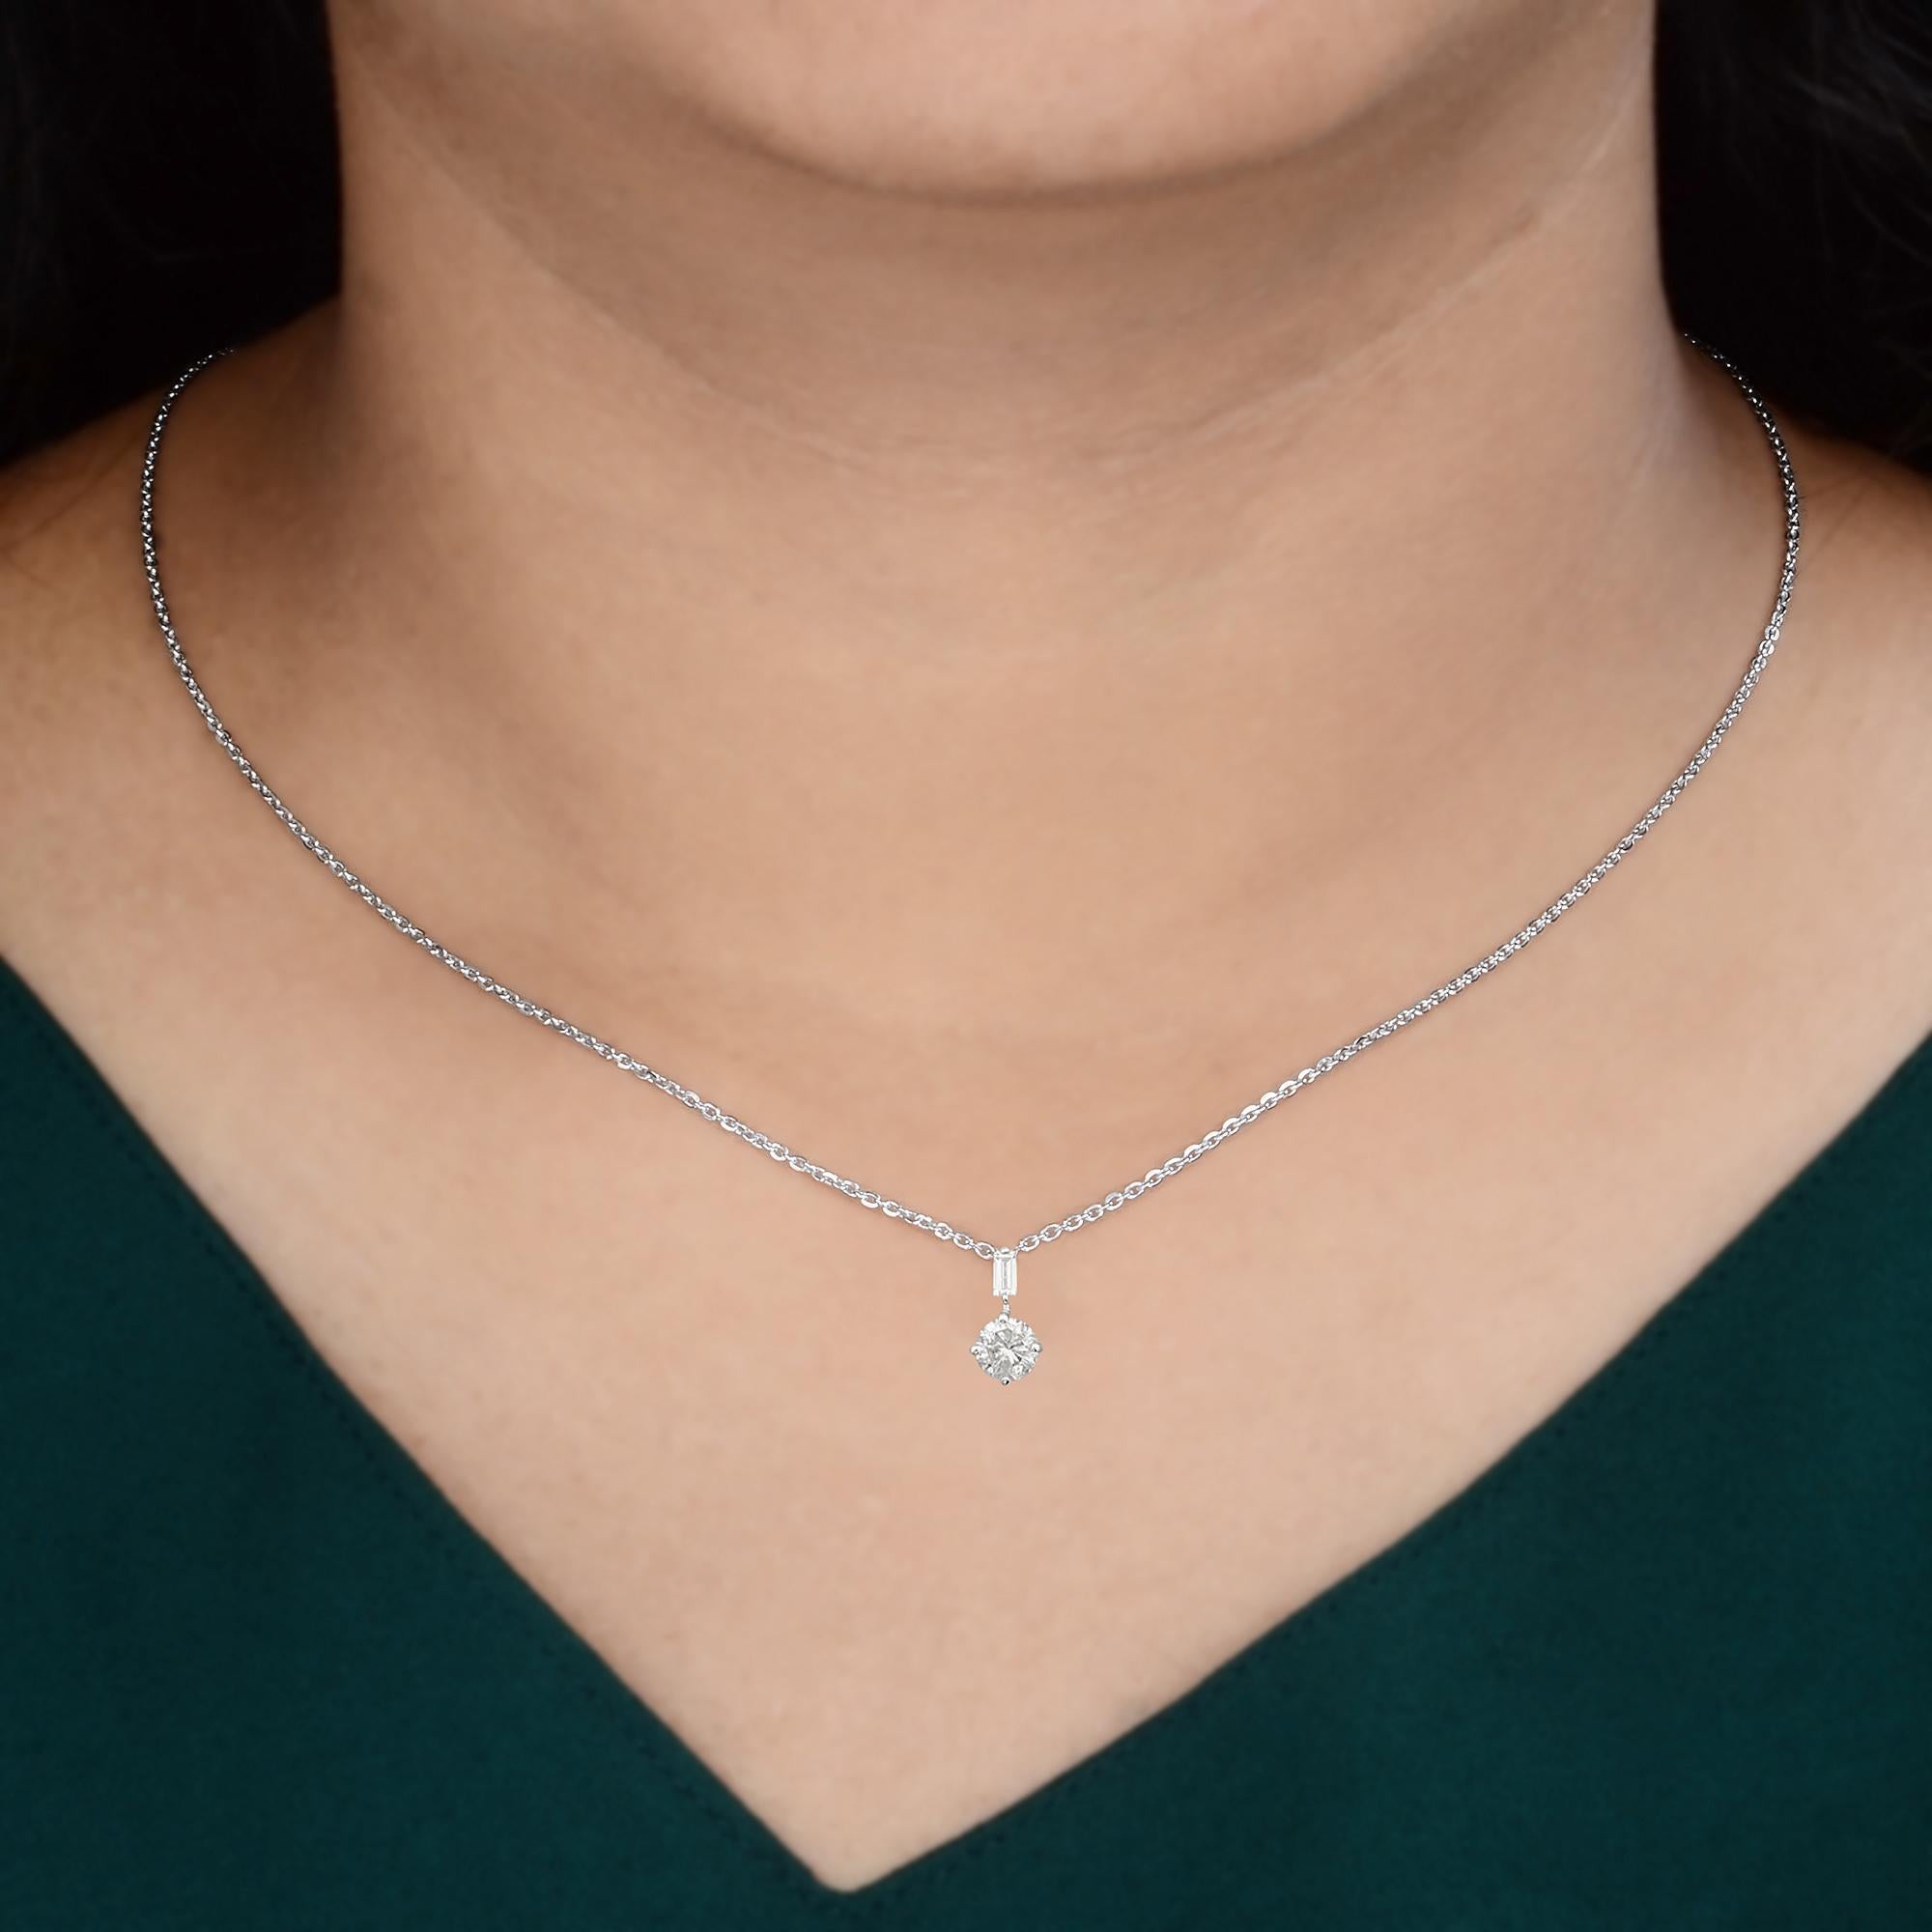 Baguette Cut 0.48 Carat Baguette Diamond Charm Pendant Necklace Solid 14k White Gold Jewelry For Sale